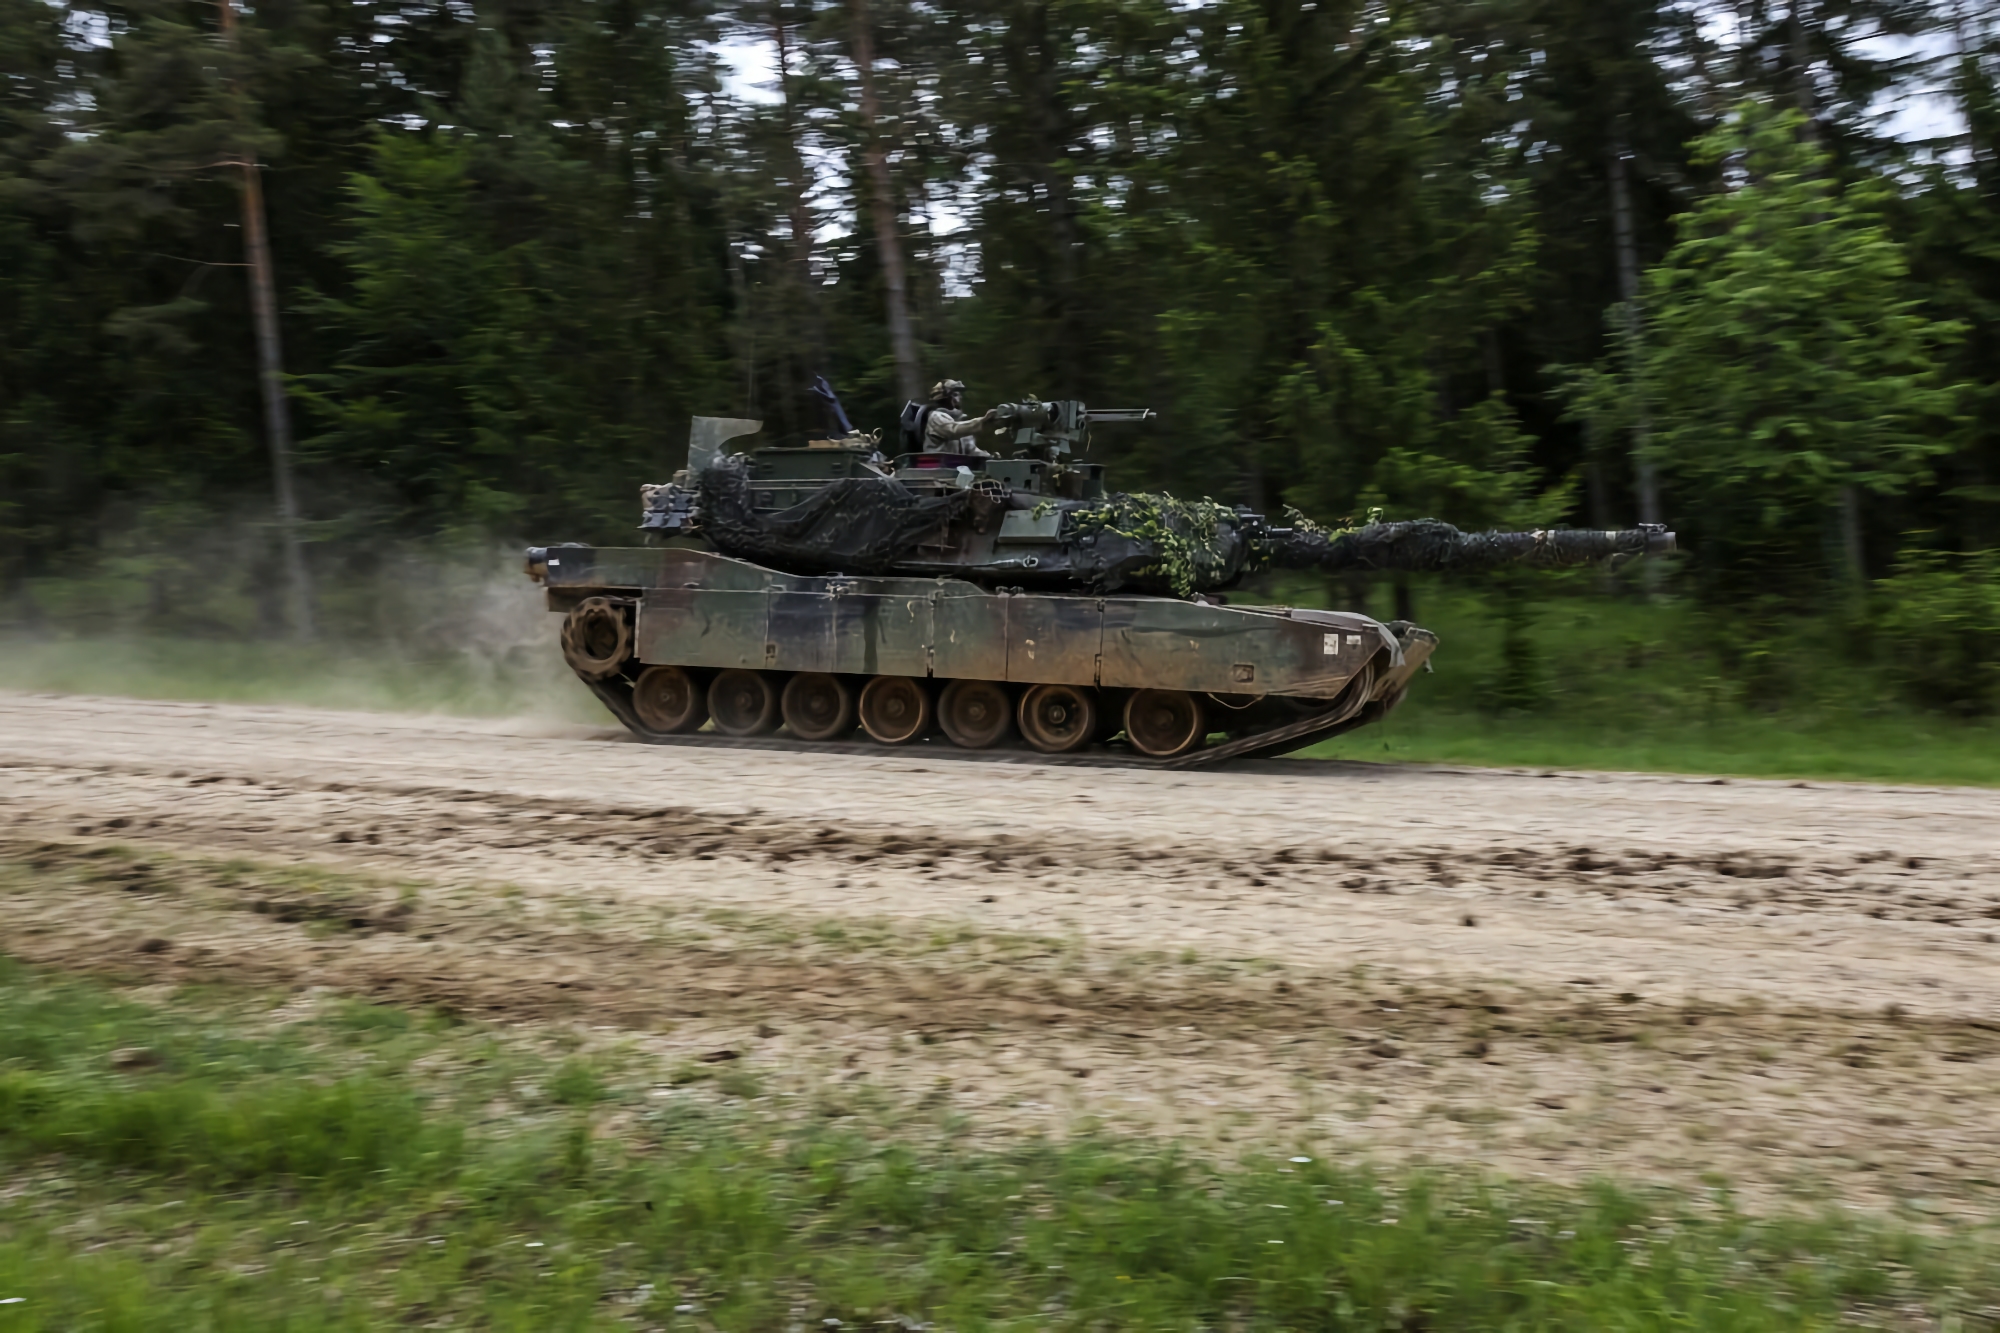 AFU pokazało pierwszy materiał filmowy przedstawiający amerykański czołg M1 Abrams w akcji